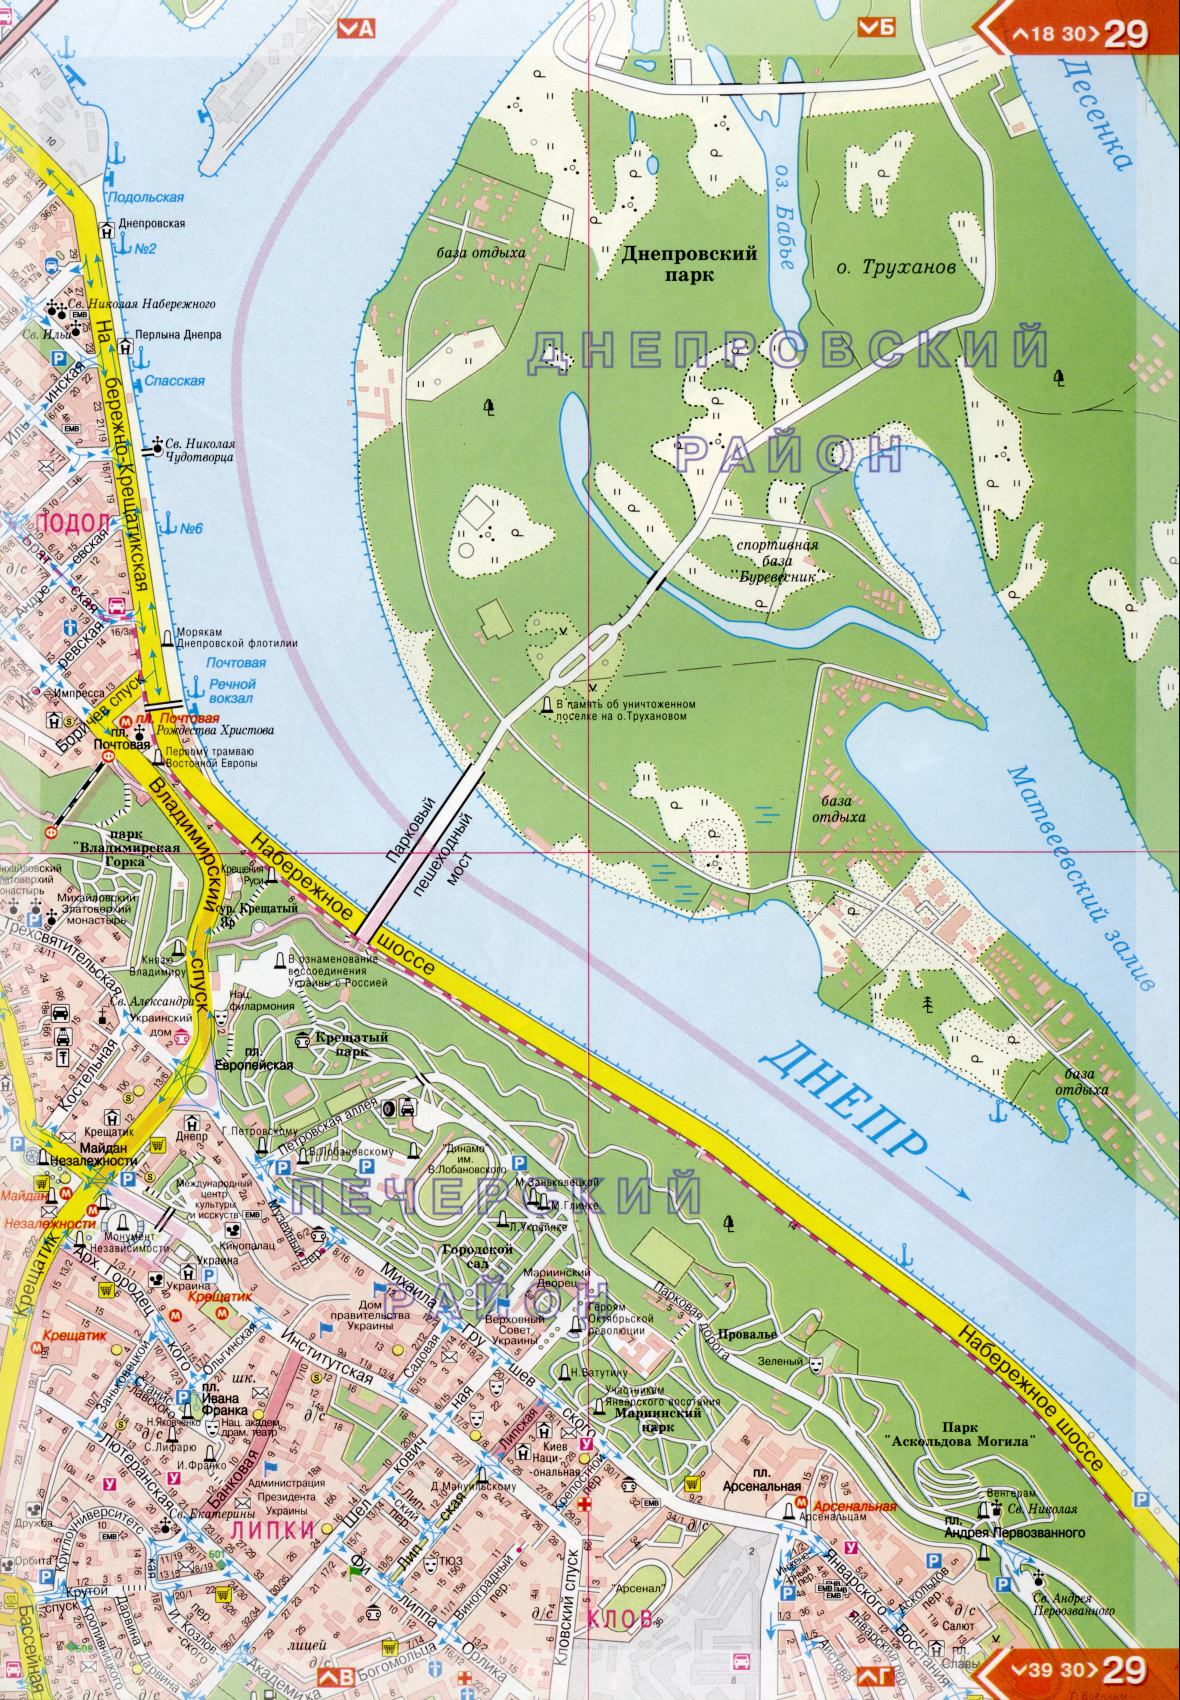 Kiew Karte Details 1cm = 150m für 45 Blatt. Karte von Kiew aus dem Atlas von Autobahnen. Laden Sie eine detaillierte Karte, F2